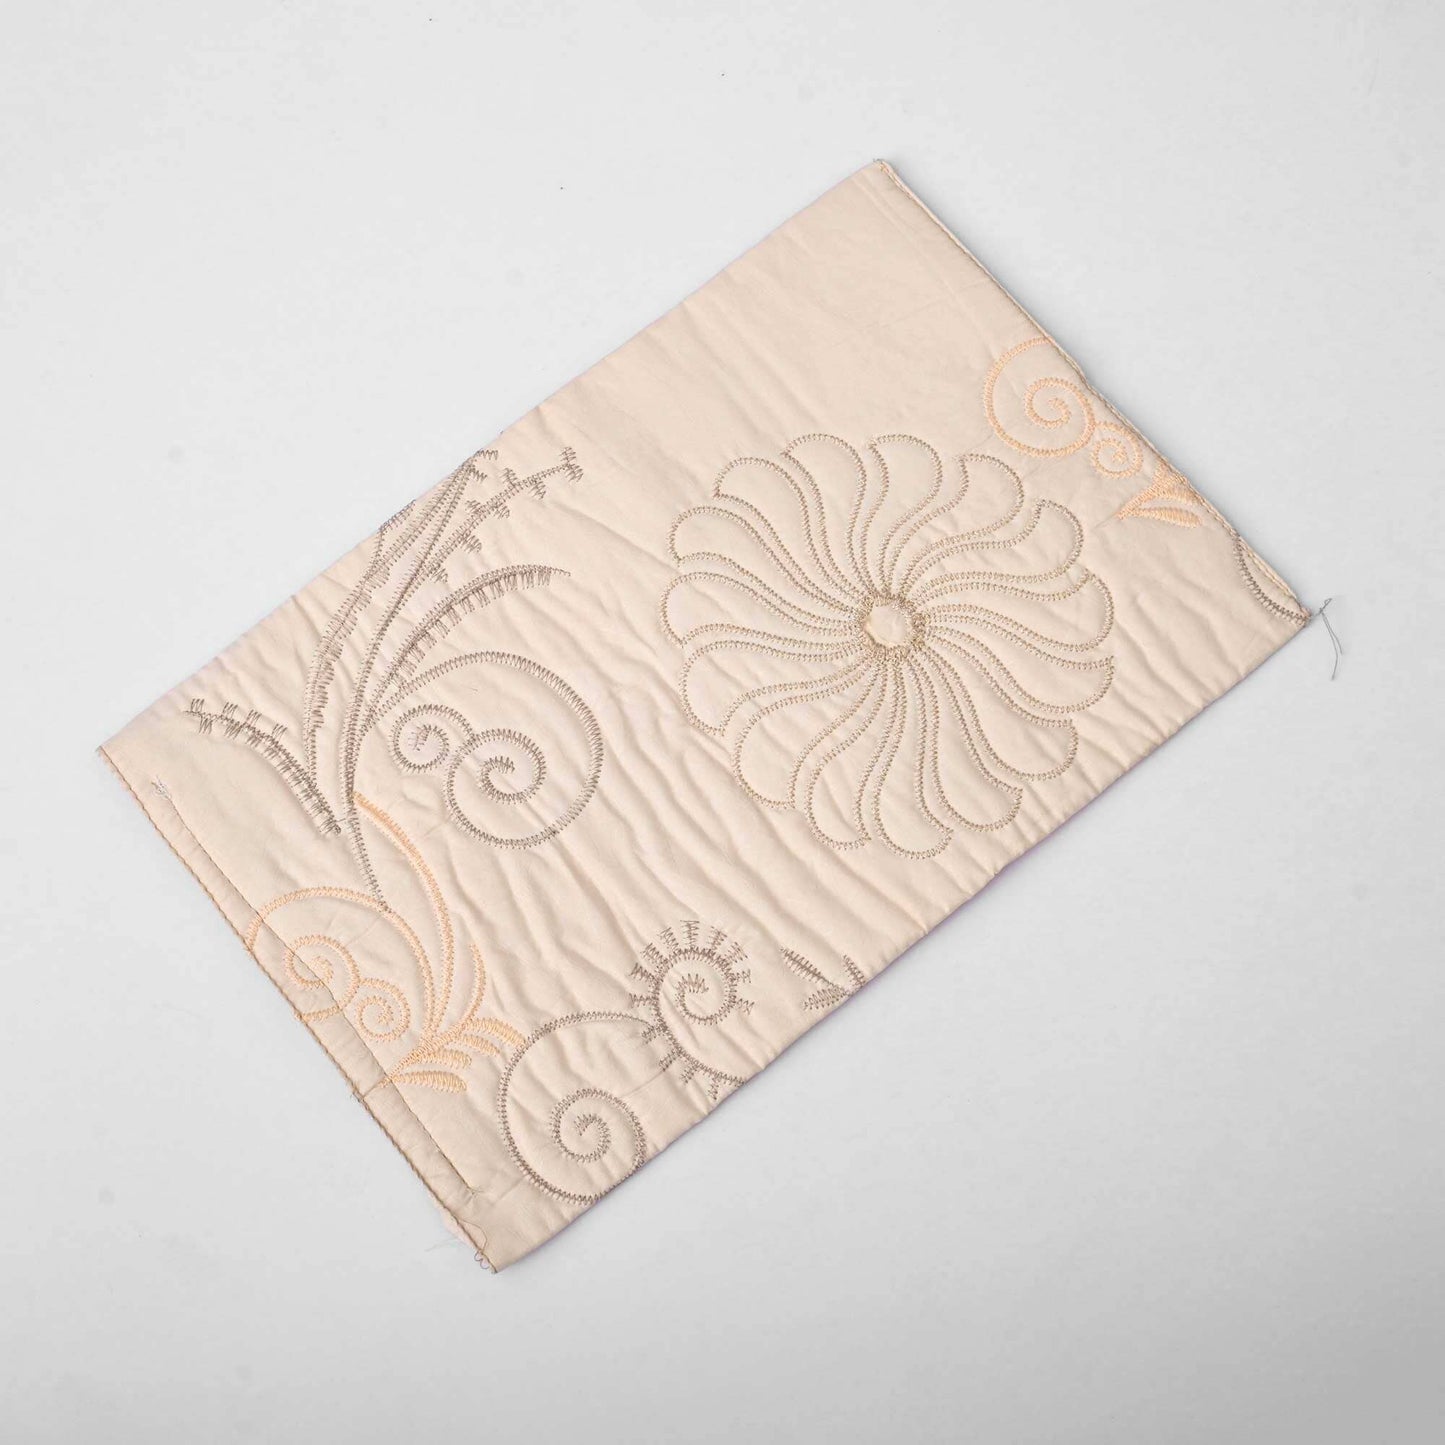 Fabric Tissue Box Cover General Accessories De Artistic 